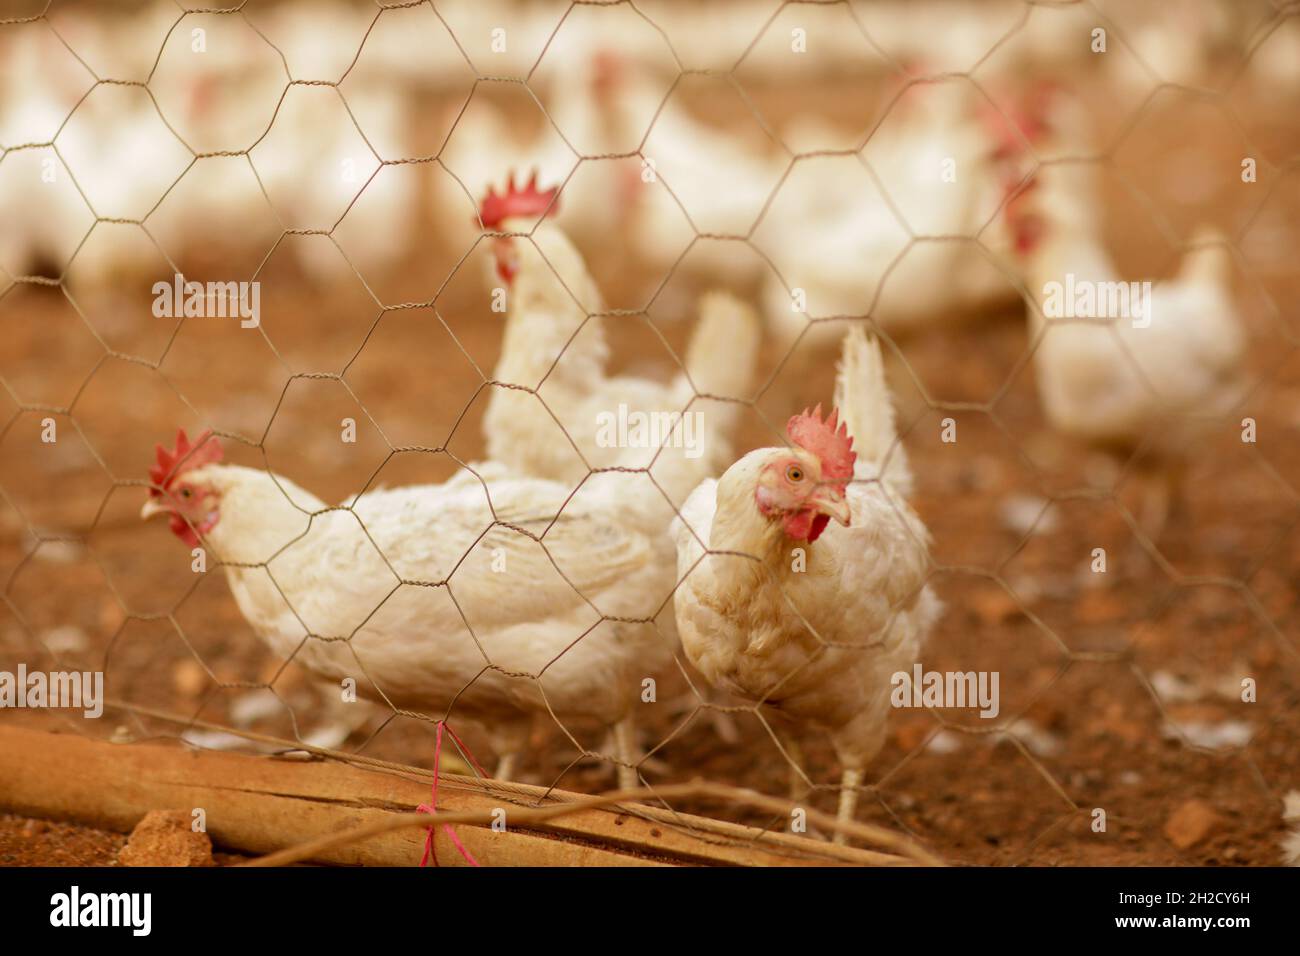 17 octobre 2021, Gaziantep, Anatolie, Turquie : Gaziantep,Turquie.19 octobre 2021.Poules dans les fermes œGrand dans la ville de Gaziantep, dans le sud de la Turquie.La ferme reproduit du poulet ainsi que des moutons et des chèvres et produit un grand nombre d'oeufs à l'aire libre.Il cultive également des champignons et produit des fourrages pour animaux, et s'engage à protéger l'environnement et à assurer la durabilité.La ferme est un exemple d'intégration réussie des Syriens qui s'installent en Turquie après avoir fui le conflit dans leur pays d'origine (Credit image: © Muhammad ATA/IMAGESLIVE via ZUMA Press Wire) Banque D'Images